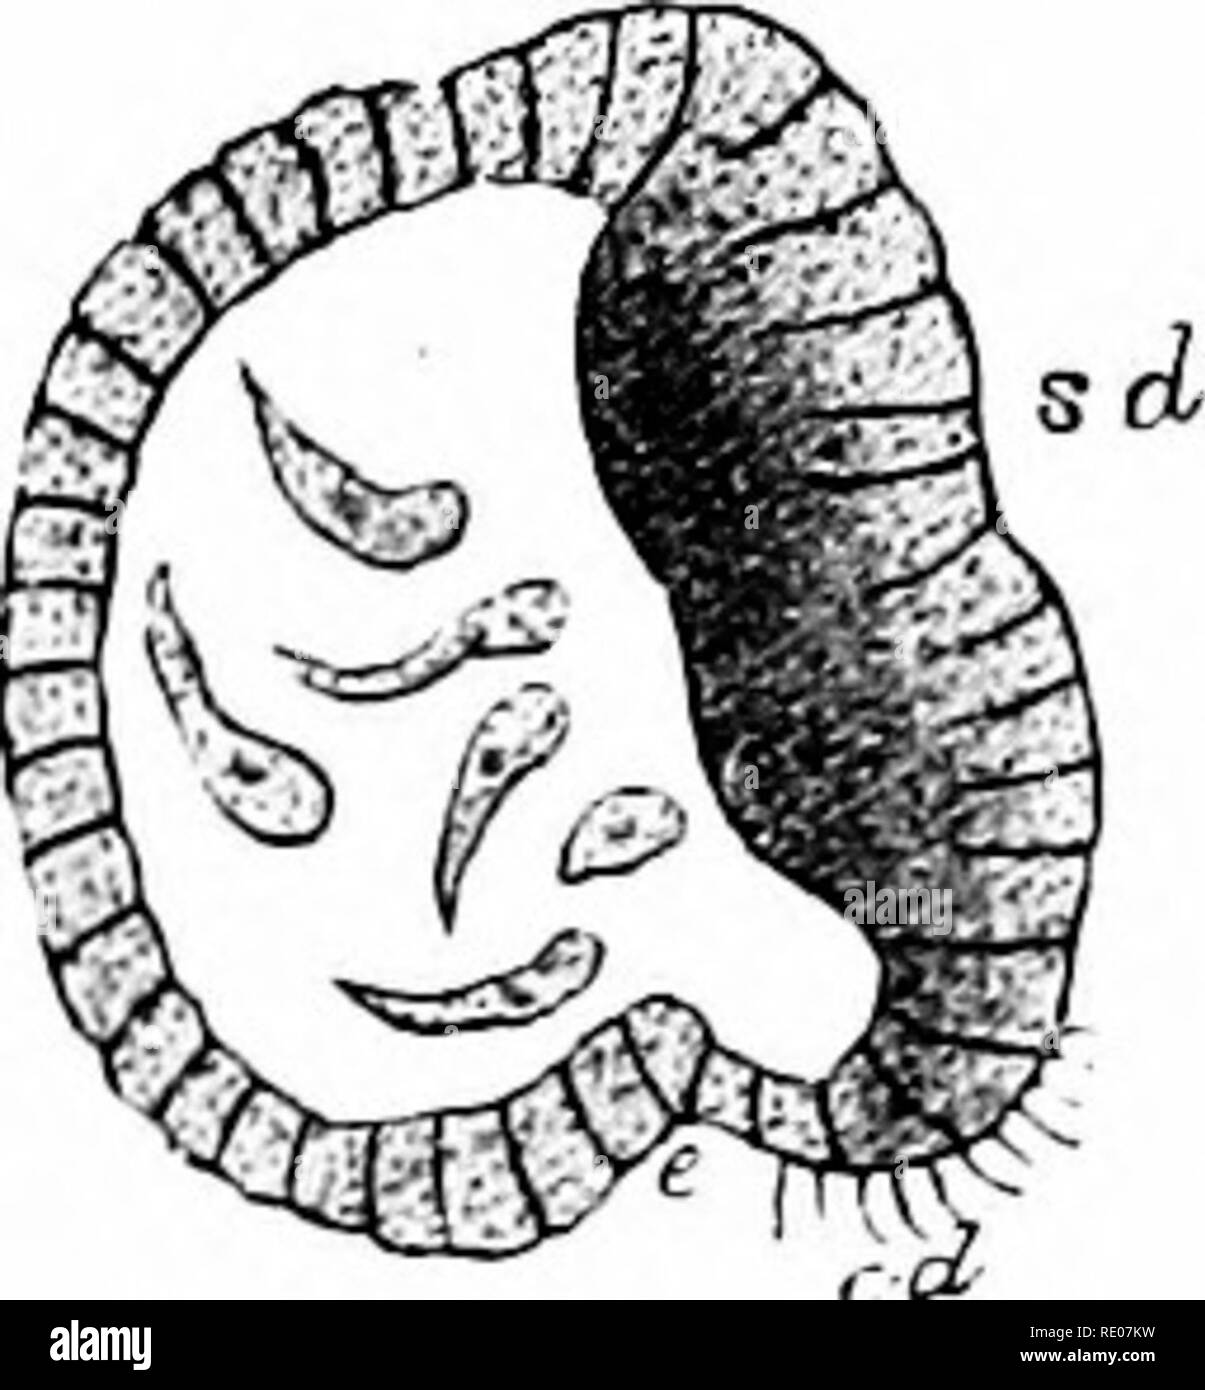 . Contorni di zoologia. Zoologia. Lo sviluppo e la storia di vita. 371 Un invagination stabilisce tlie archenteion e l'embrione diventa una gastrula (vedere Fig. 120). Il guscio sac forma un guscio embrionale, e molte delle cellule di mesoderma si combinano in un muscolo adduttore. La bocca della gastrula si chiude e una bocca definita viene successivamente formata da un ectodermic invagina- zione. Gradualmente una larva peculiare di acqua fresca di cozze, e noto come un Glochidium, è edificato. Il Glochidium ha due triangolare, delicato ed il guscio poroso valvole, ciascuno con una spinosa dente incurvato sul suo bordo libero. Le valvole cla Foto Stock